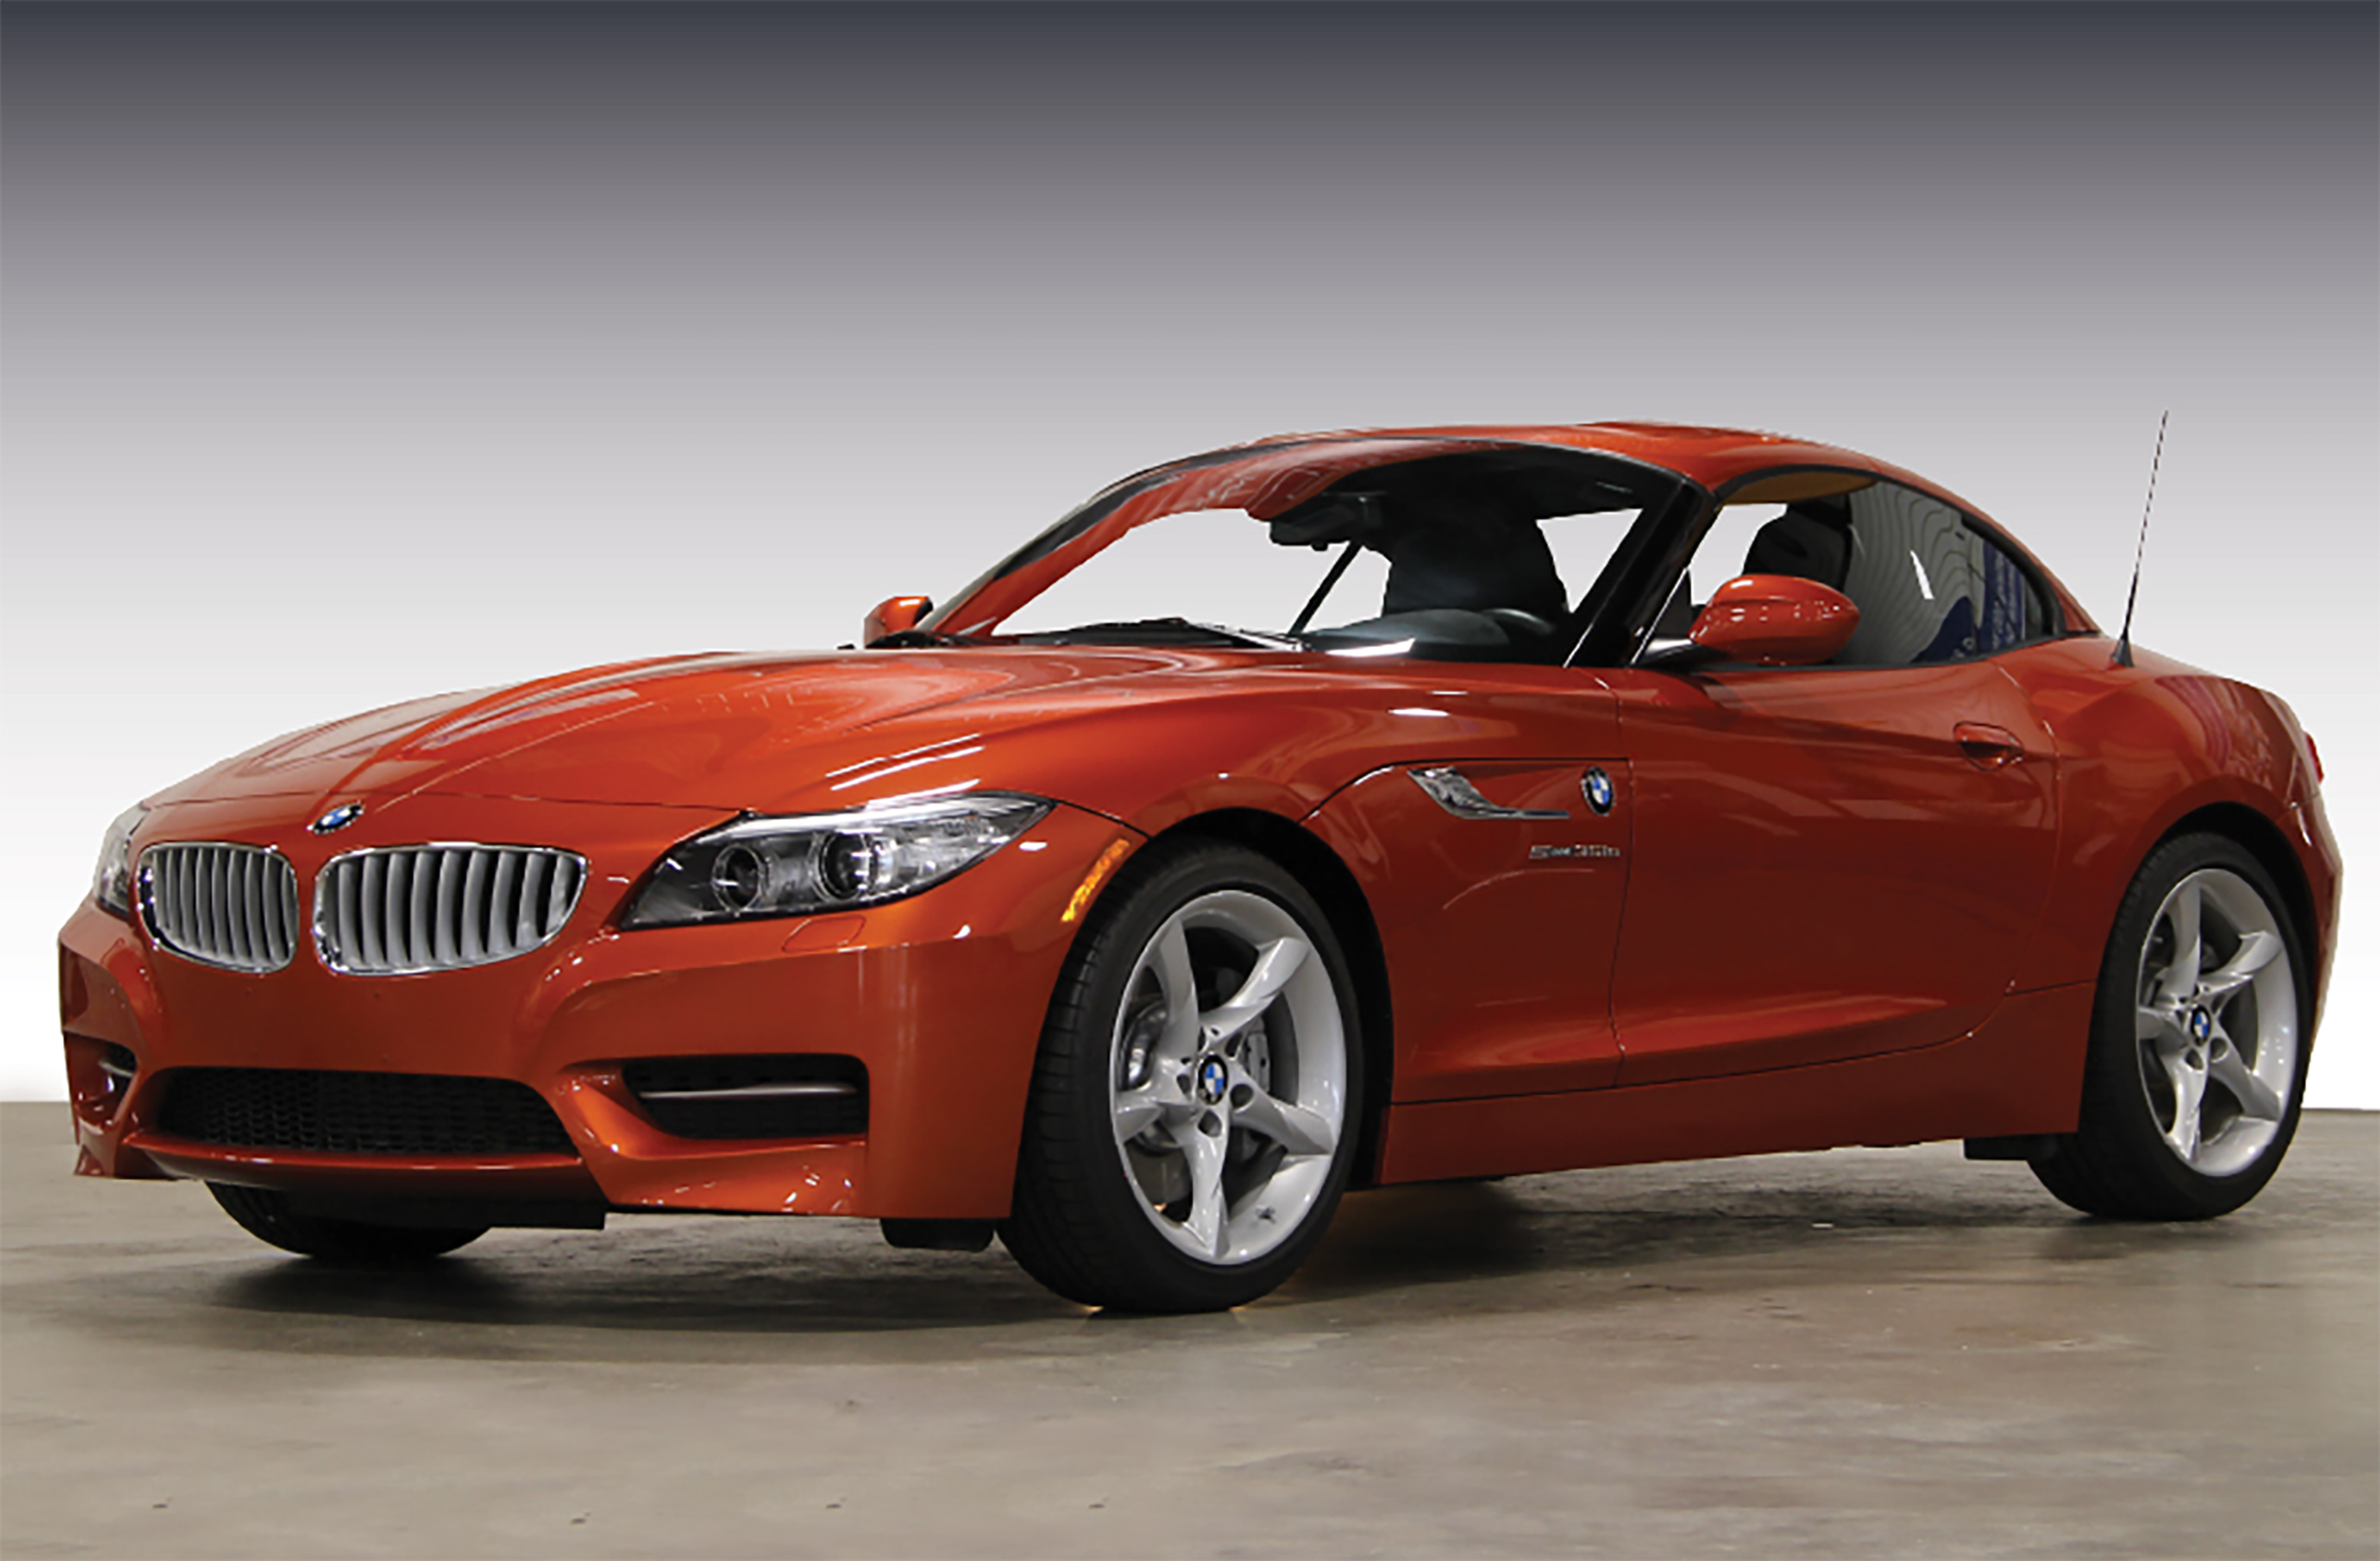 2015 Z4 35is: BMW of North America – BMW Car Club of America Foundation